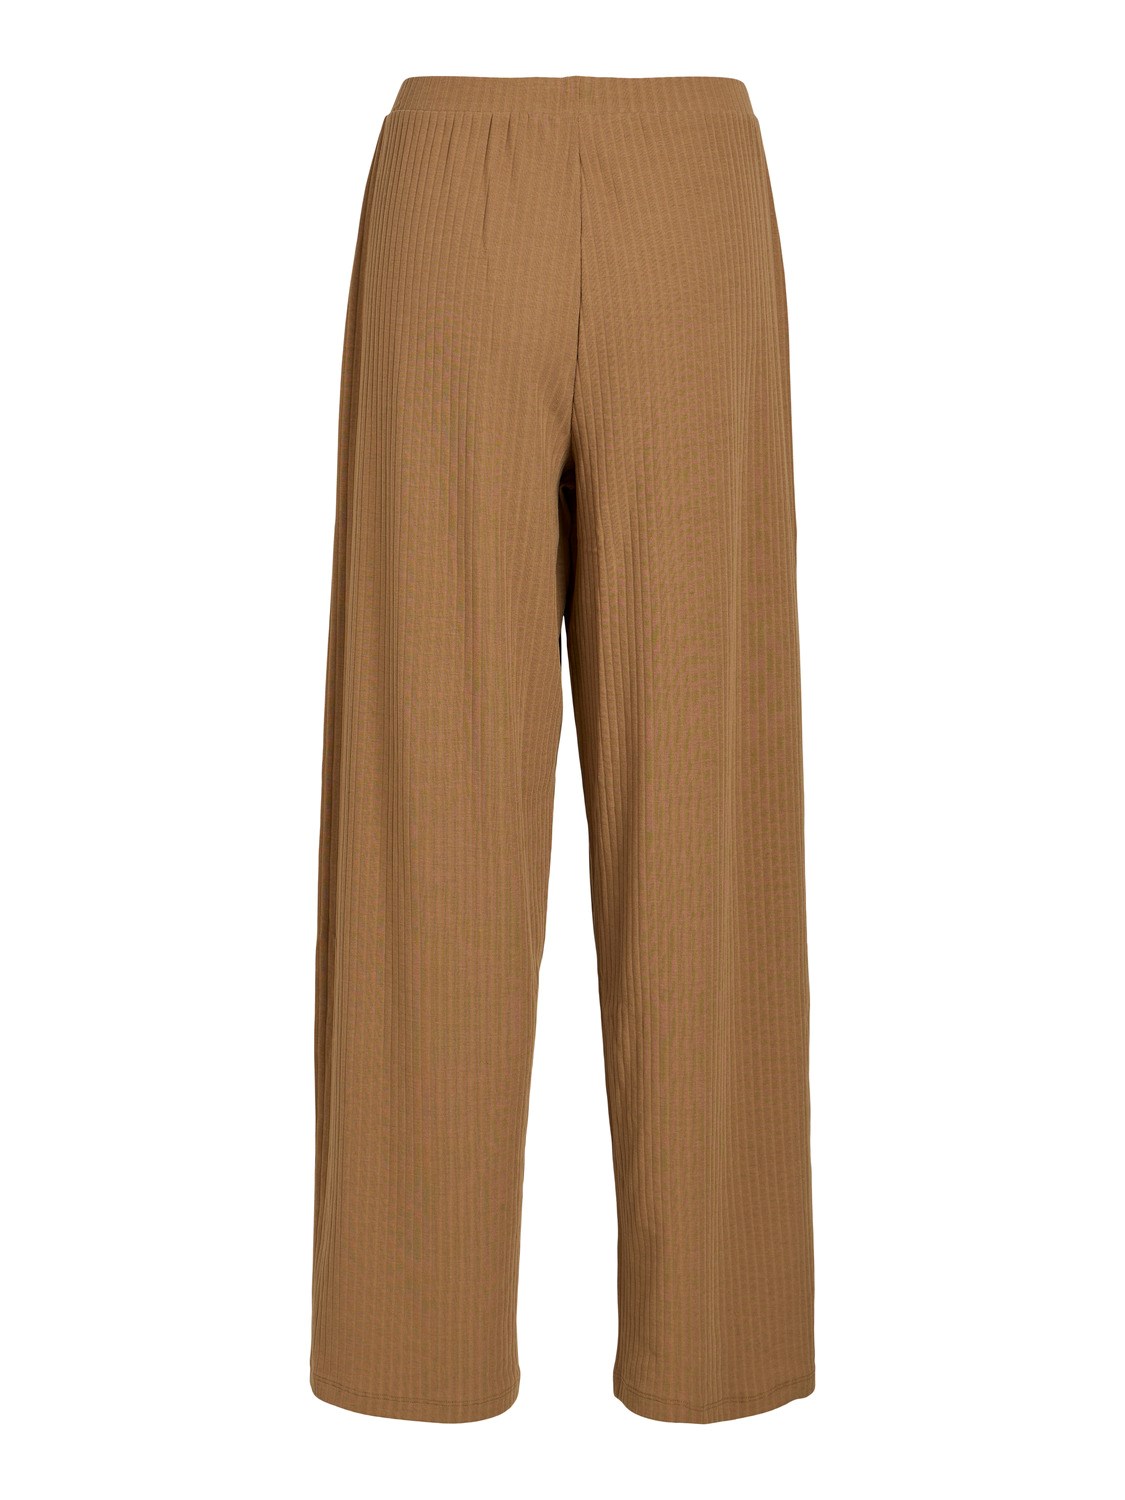 Pantalón Loli de canalé y cintura engomada en color camel. Modelo 14092123 de Vila.